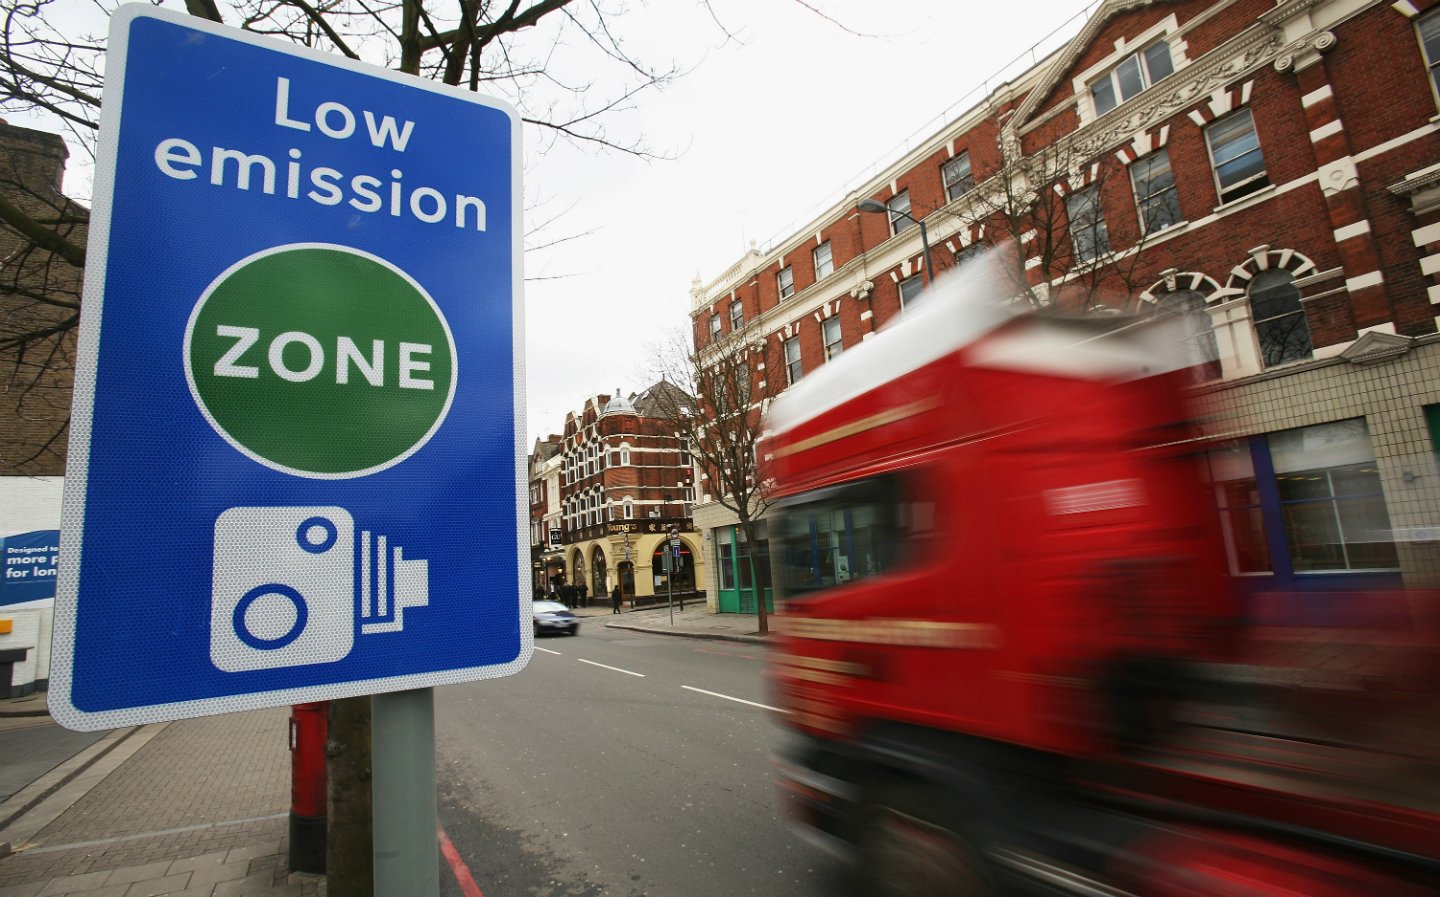 Cidades como Londres possuem zonas restritas a circulação de apenas veículos de baixa emissão.